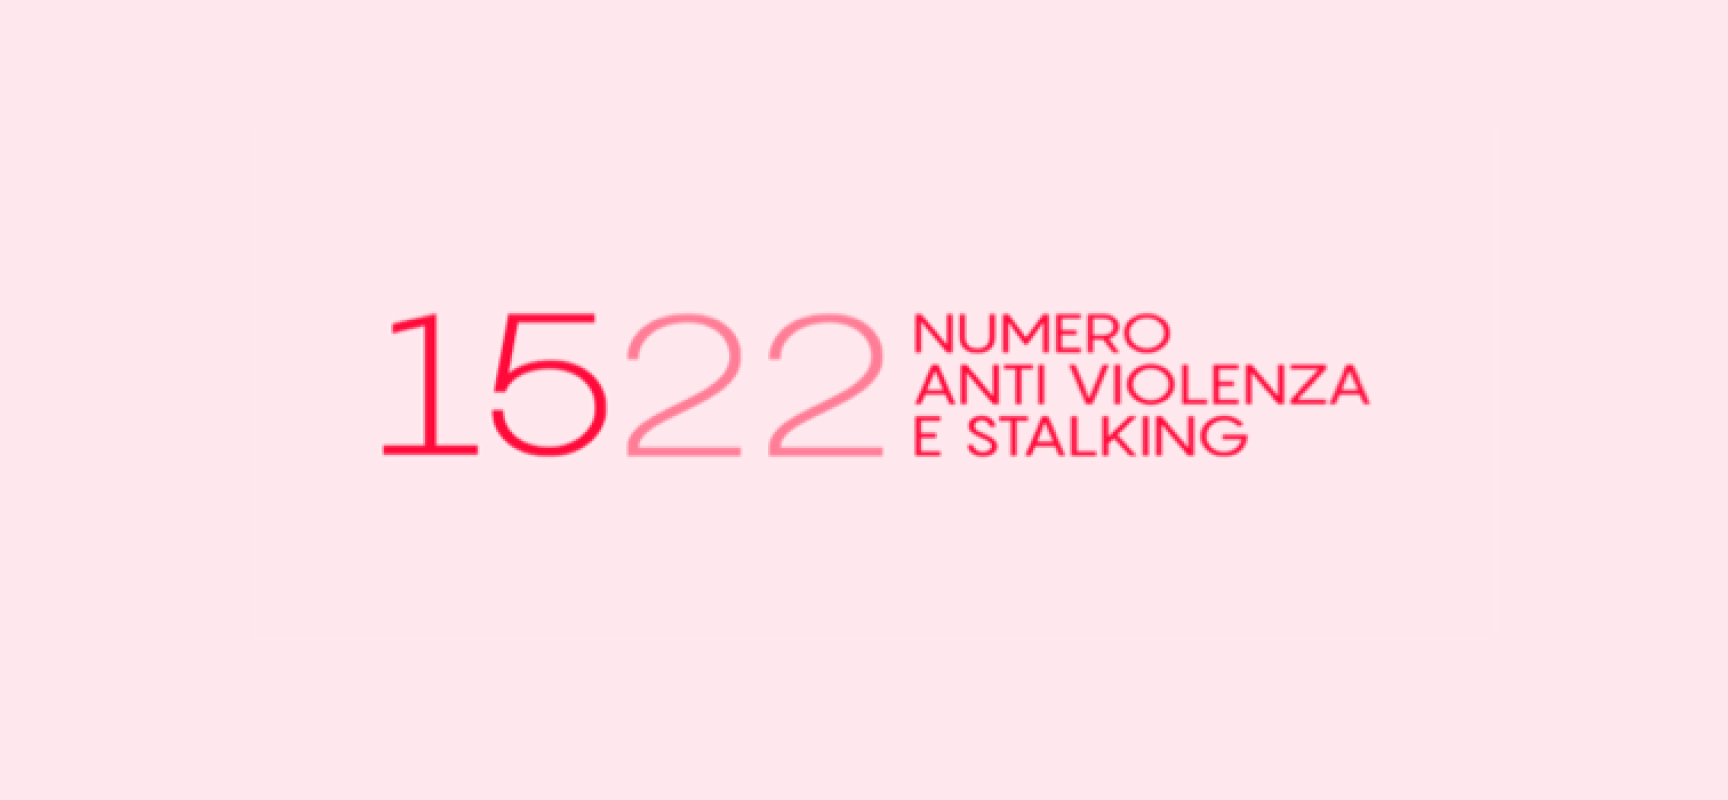 Giornata contro violenza sulle donne, Silvestris: “Vittime non devono sentirsi sole”